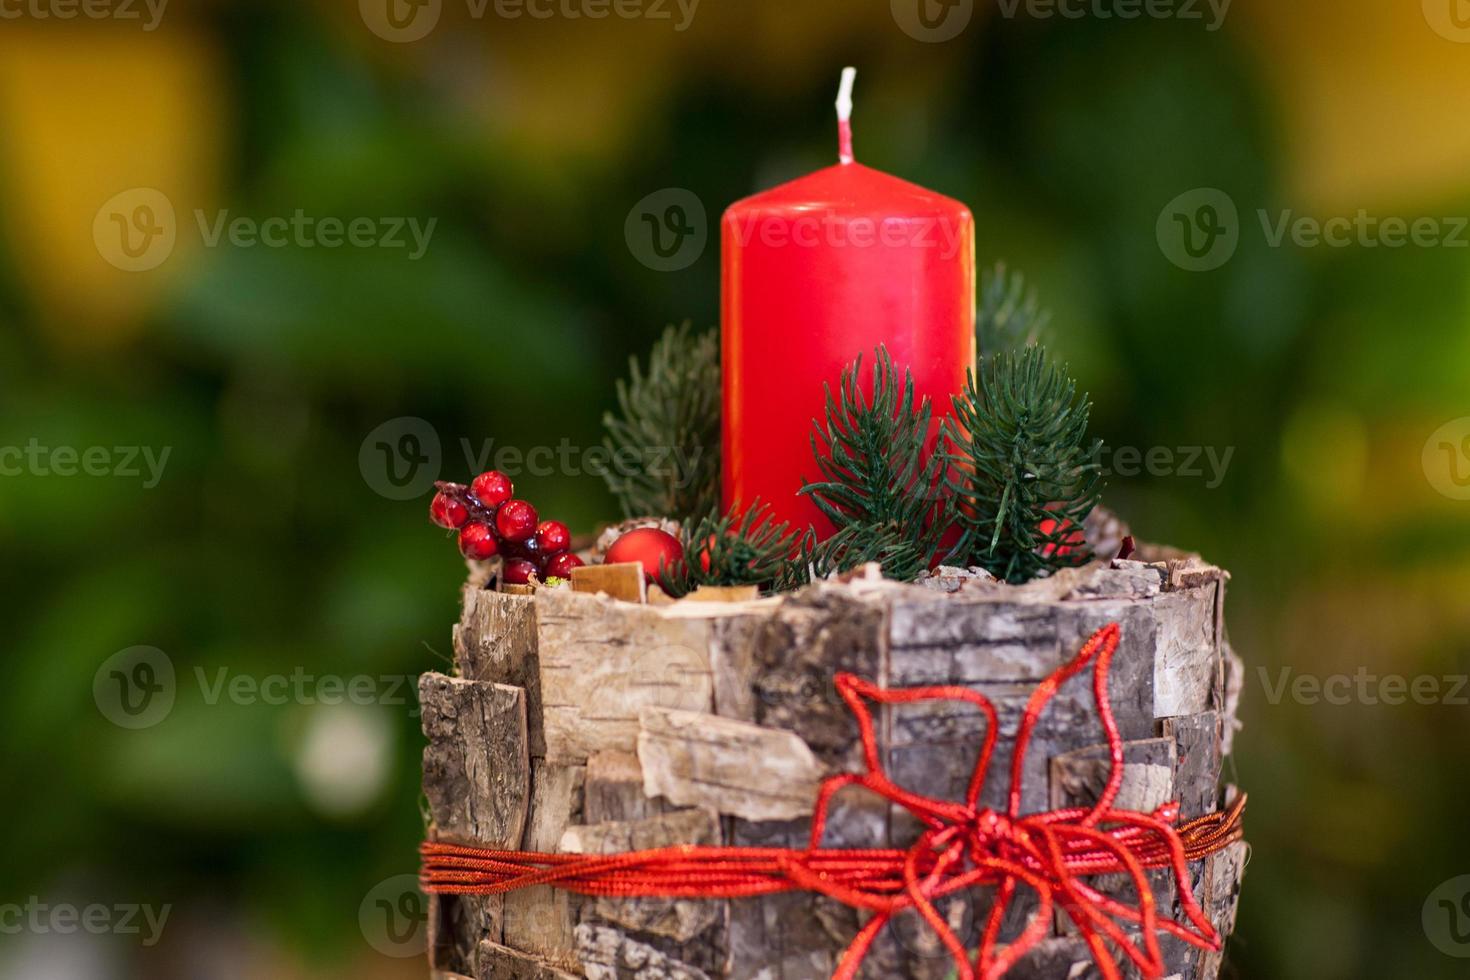 jul rött ljus på en stubbe dekorerad trädbark och bär och gran grenar på en suddig bakgrund närbild foto